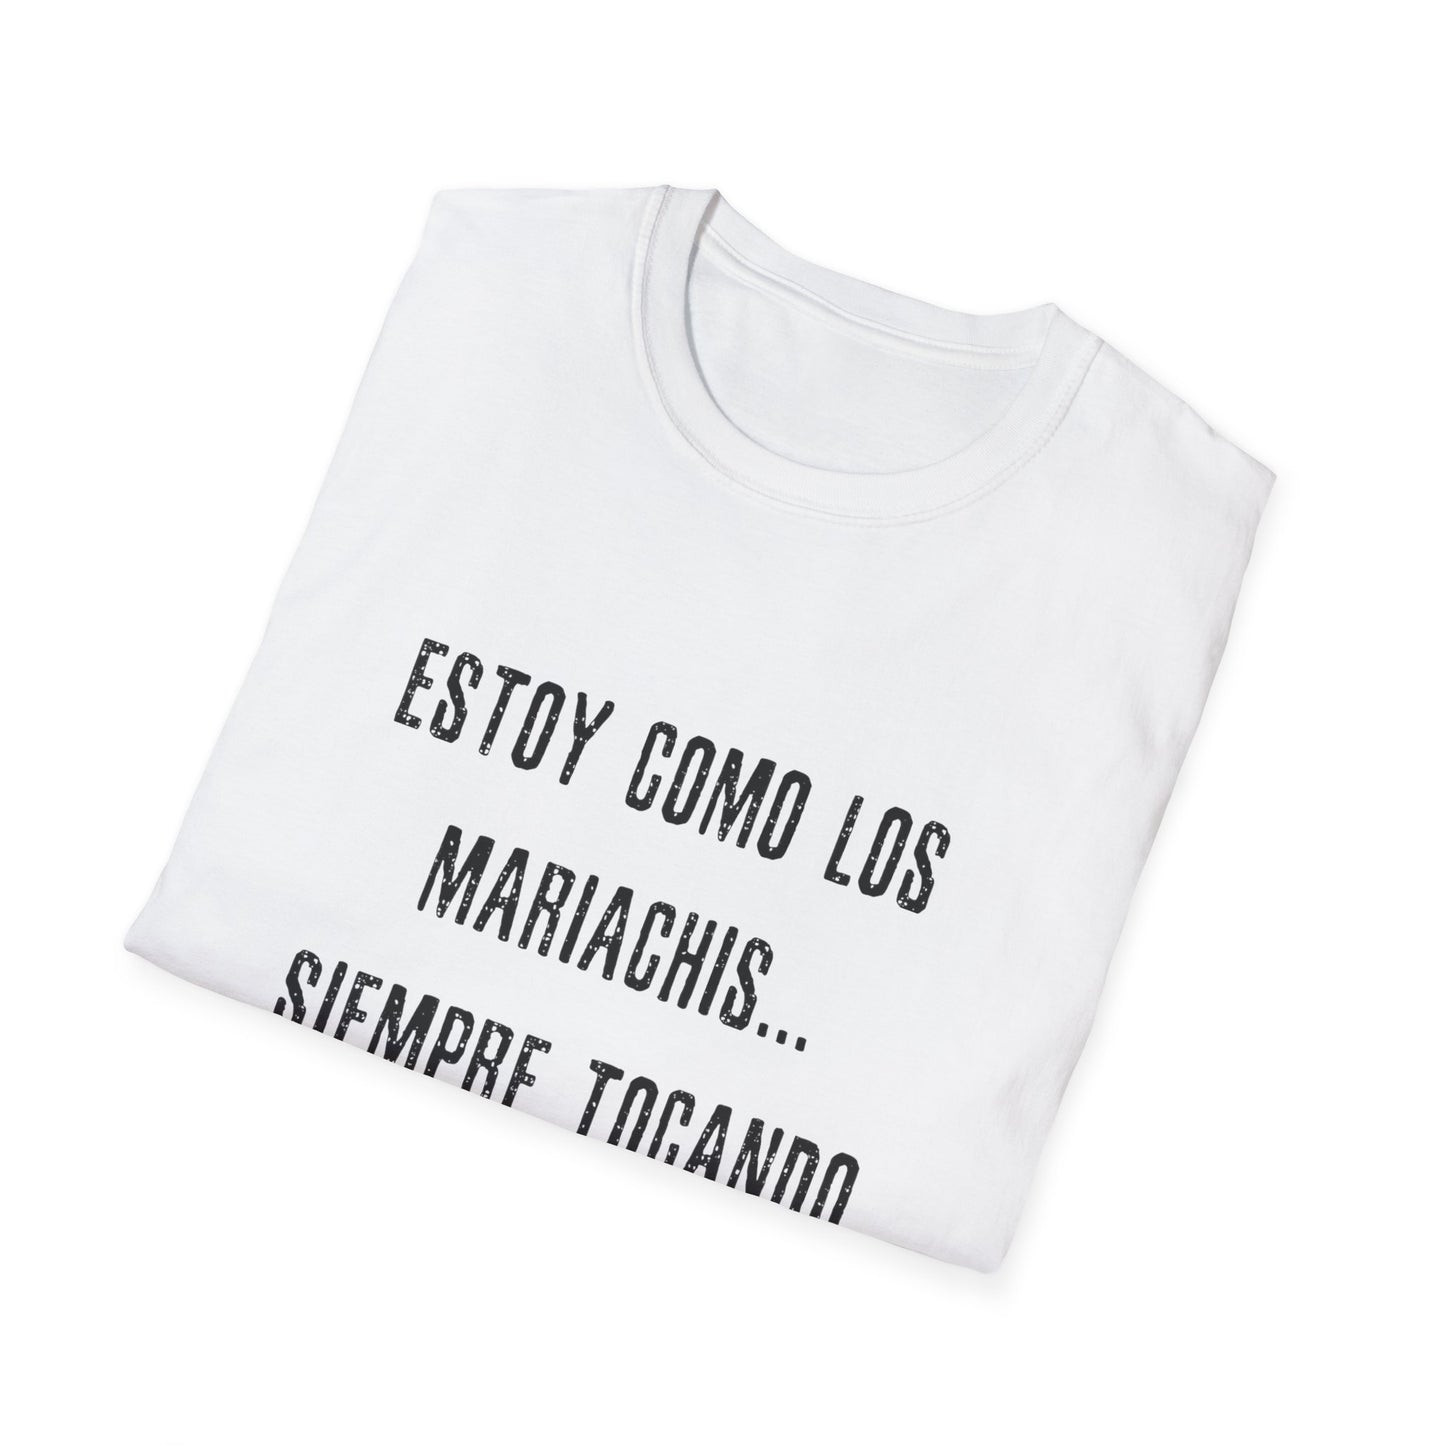 Los Mariachis